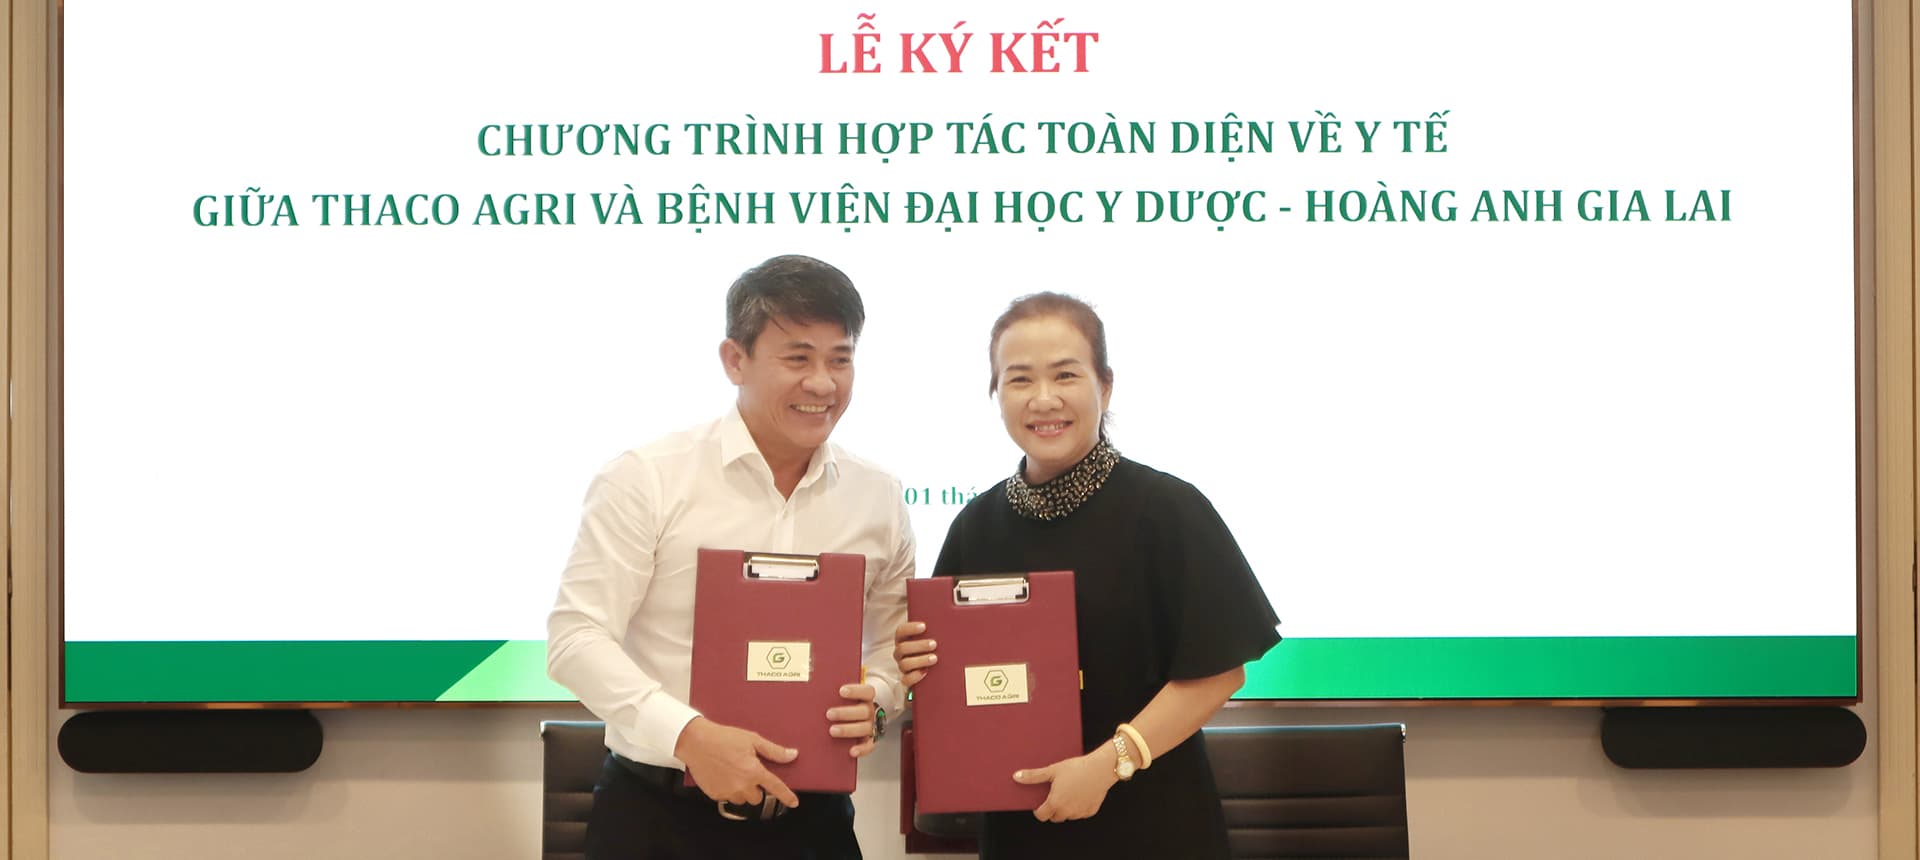 Ông Trần Bảo Sơn – Tổng Giám đốc THACO AGRI và BS CKI Nguyễn Thị Thu Thảo - Chủ tịch HĐQT Công ty Cổ phần Bệnh viện Đại học Y dược - Hoàng Anh Gia Lai ký kết chương trình hợp tác